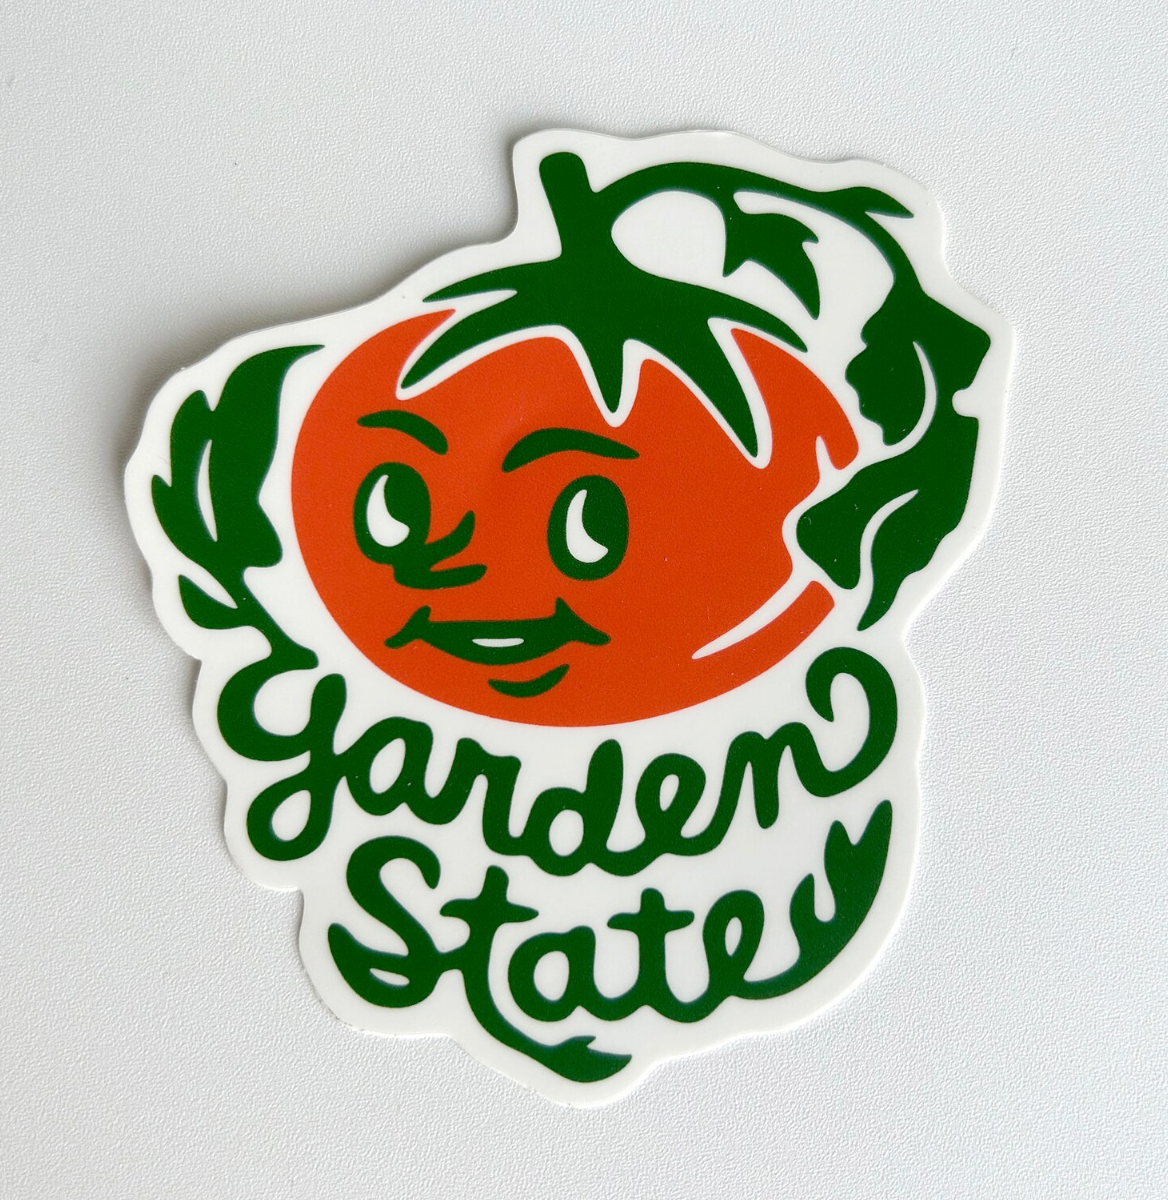 Garden State Sticker